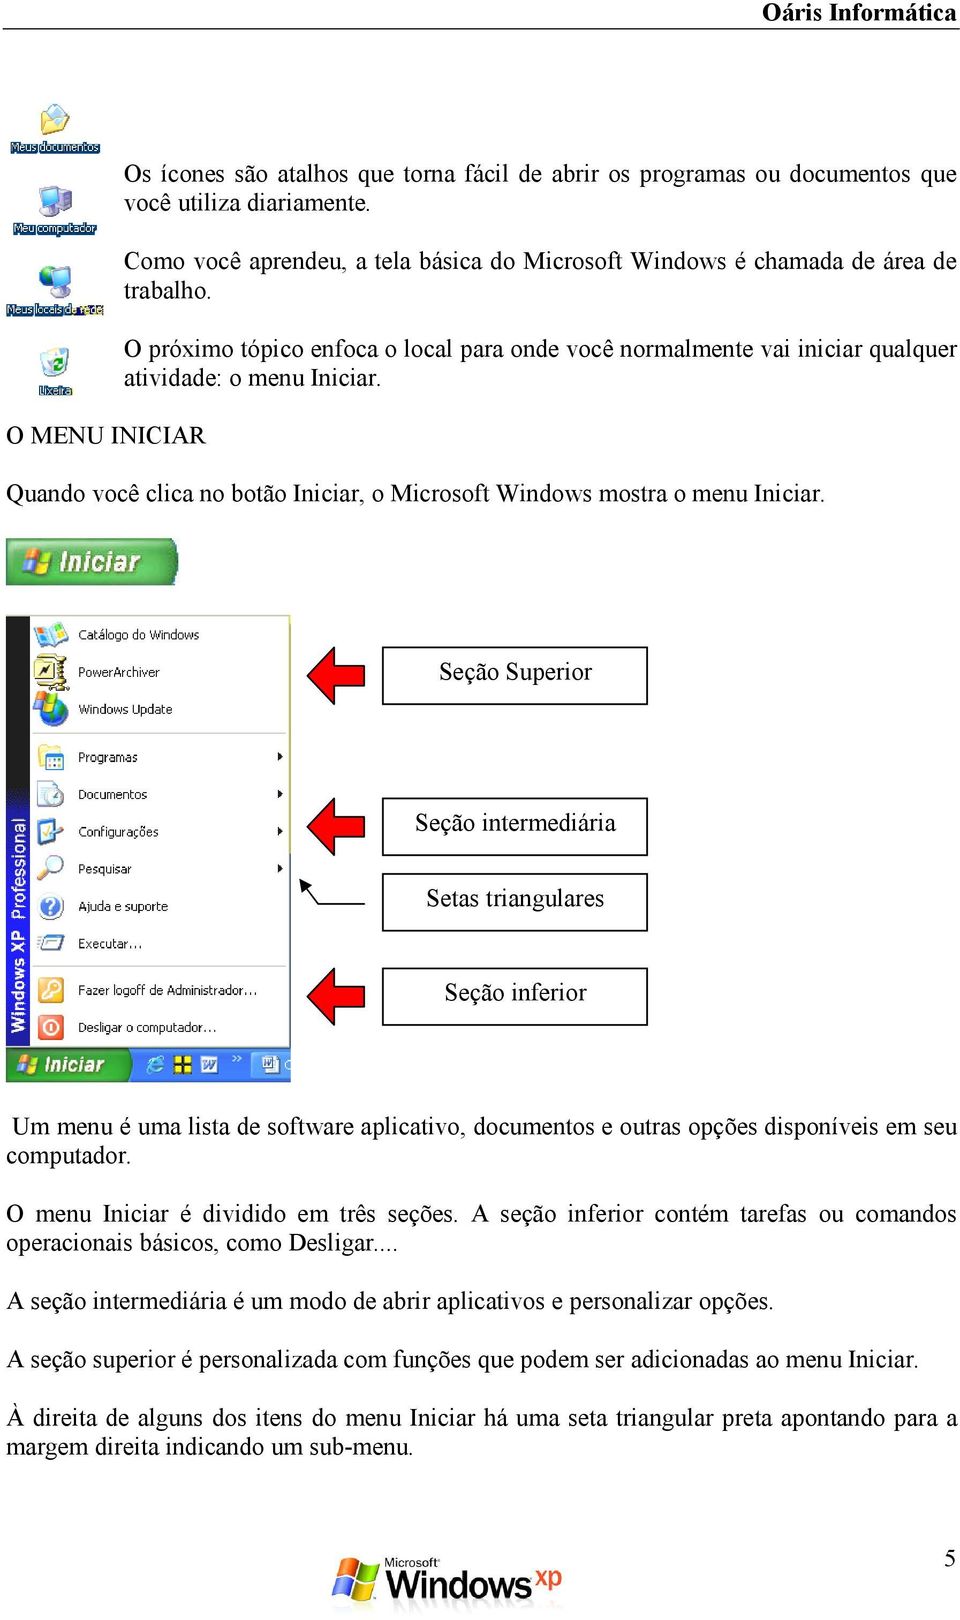 Quando você clica no botão Iniciar, o Microsoft Windows mostra o menu Iniciar.